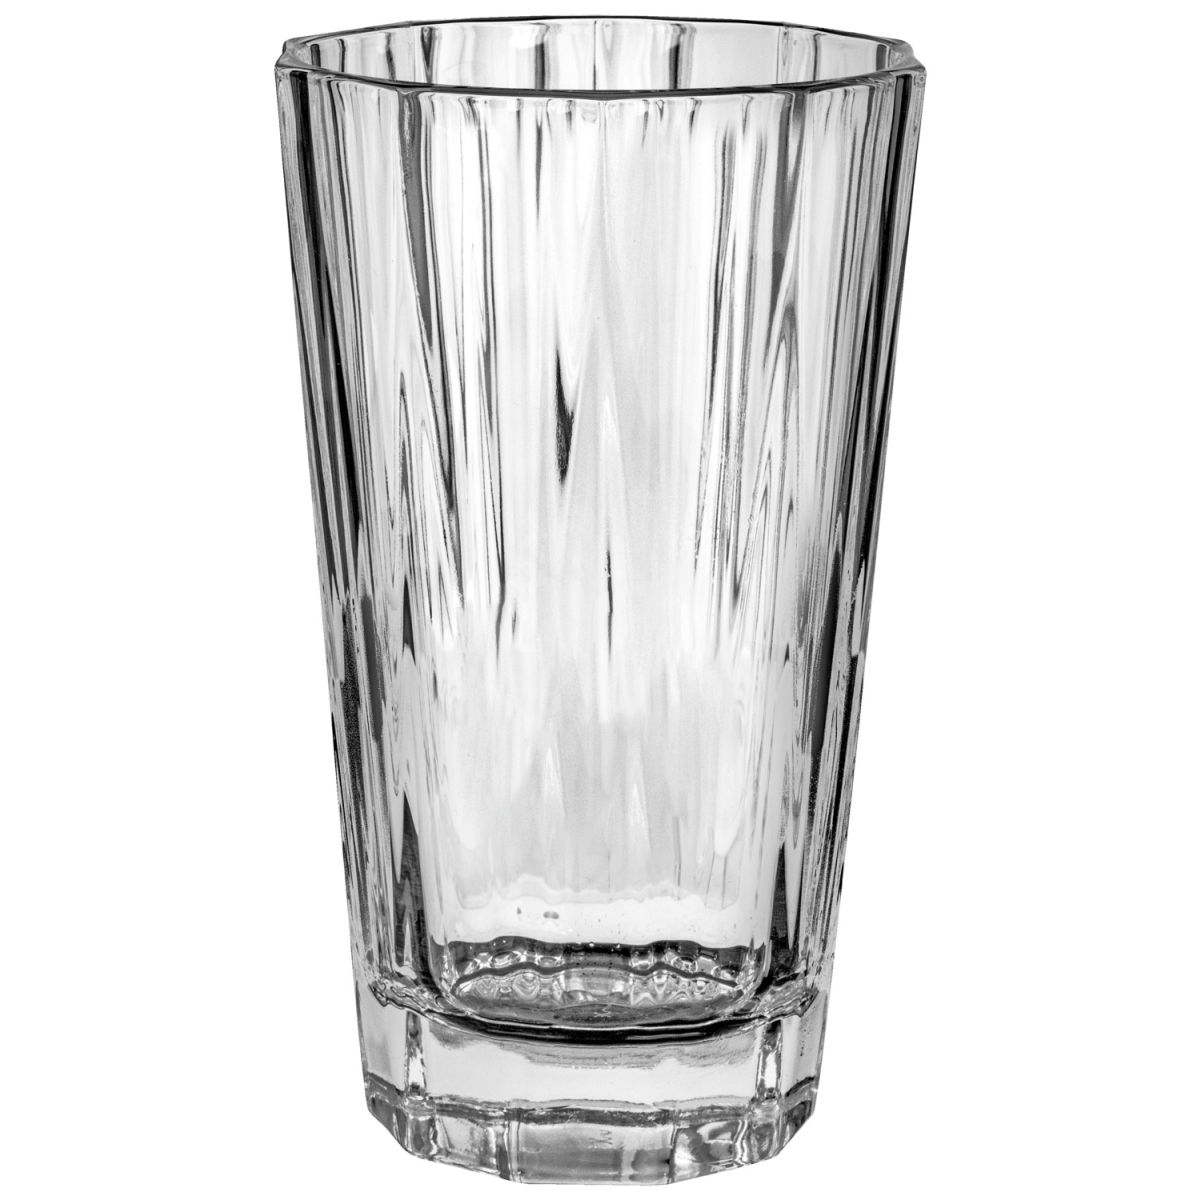 nude longdrinkglas hemingway; 310ml, 7.5x15.5 cm (Ã˜xh); ; 4 stÃ¼ck / packung transparent